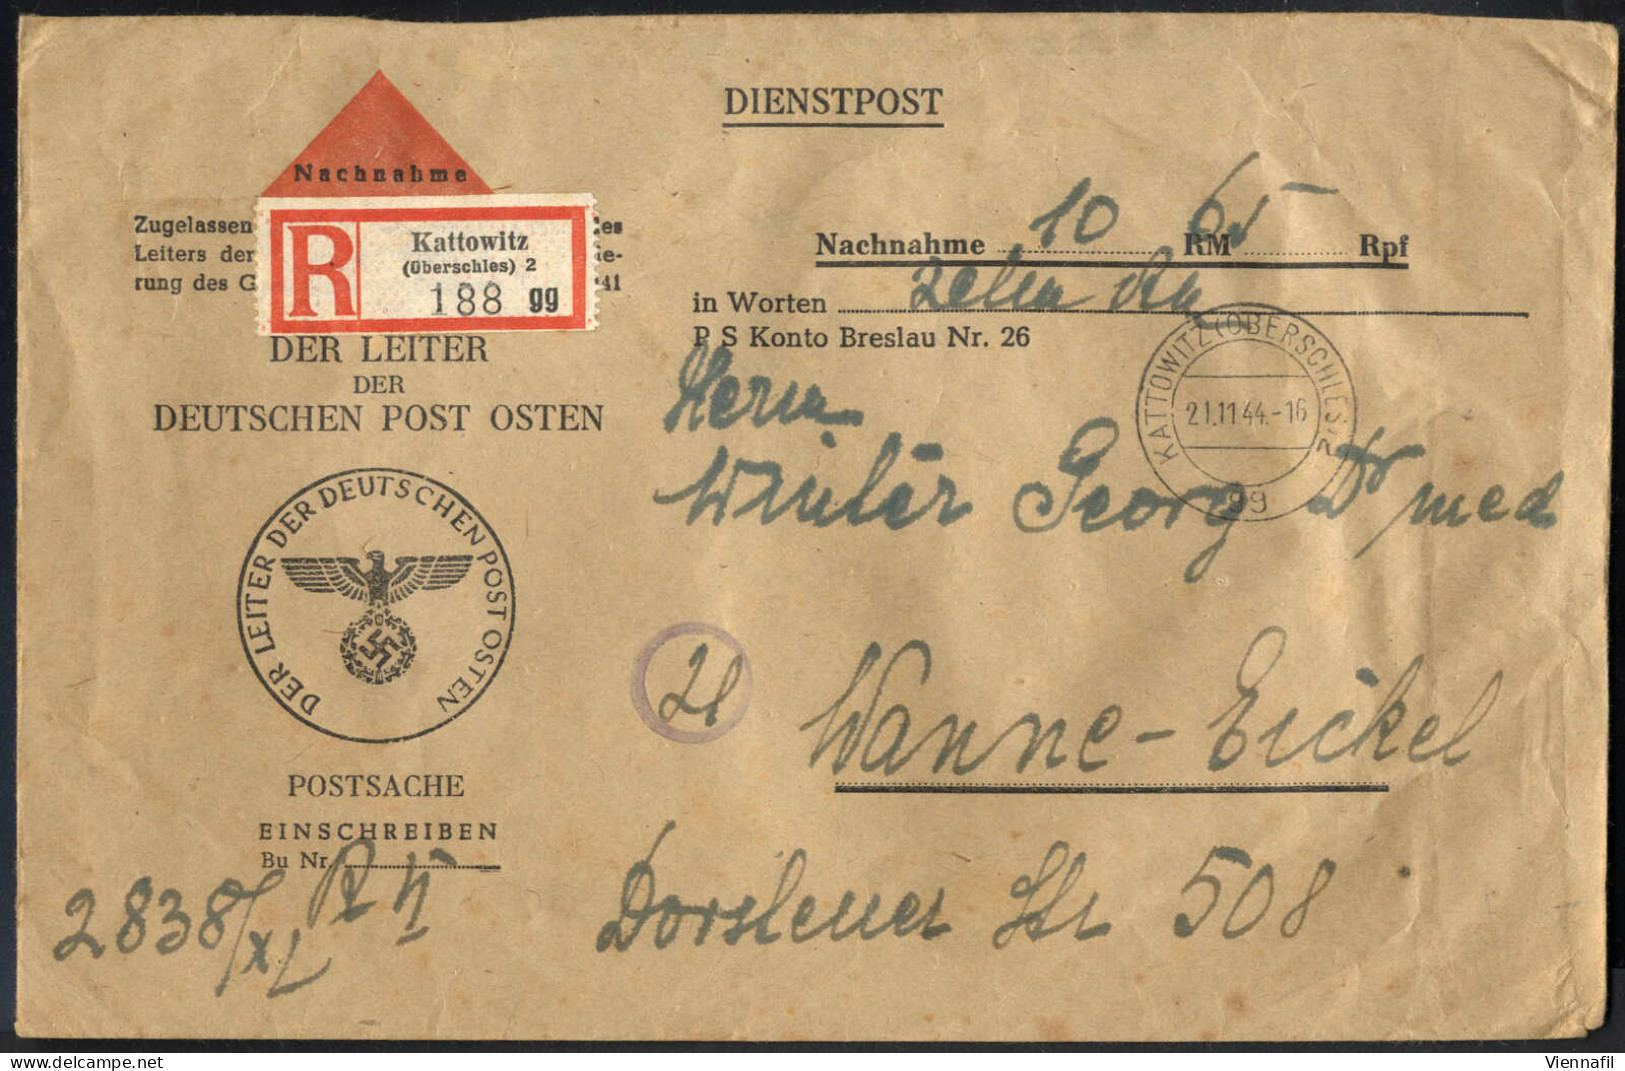 cover 1904/48, 15 Karten, Briefe, Ganzsachen, vier Einschreiben und 2 Perfin, alle Bilder in Onlinekatalog